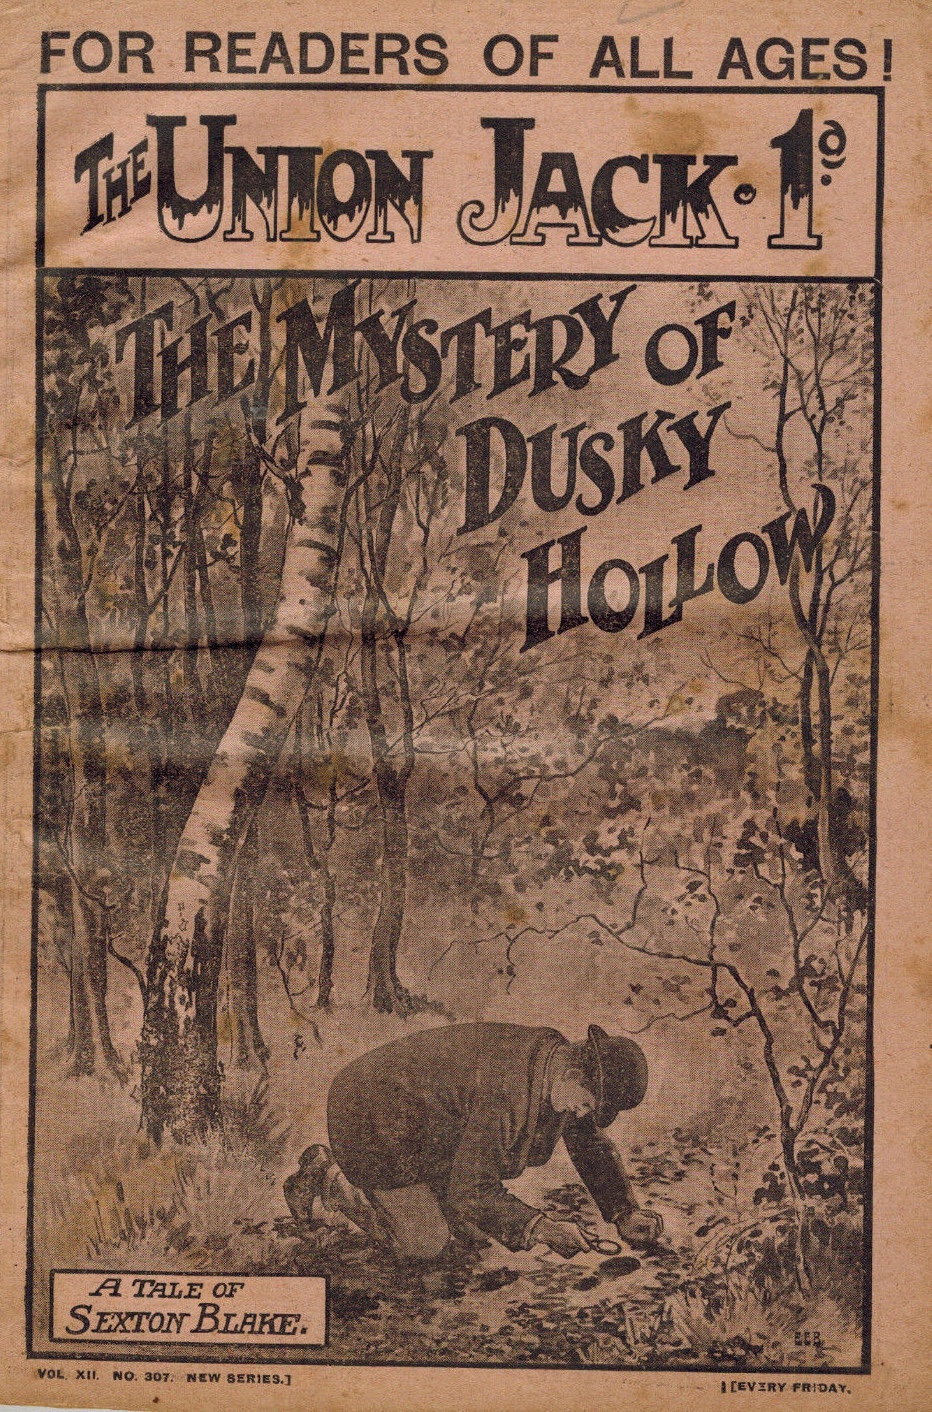 THE MYSTERY OF DUSKY HOLLOW